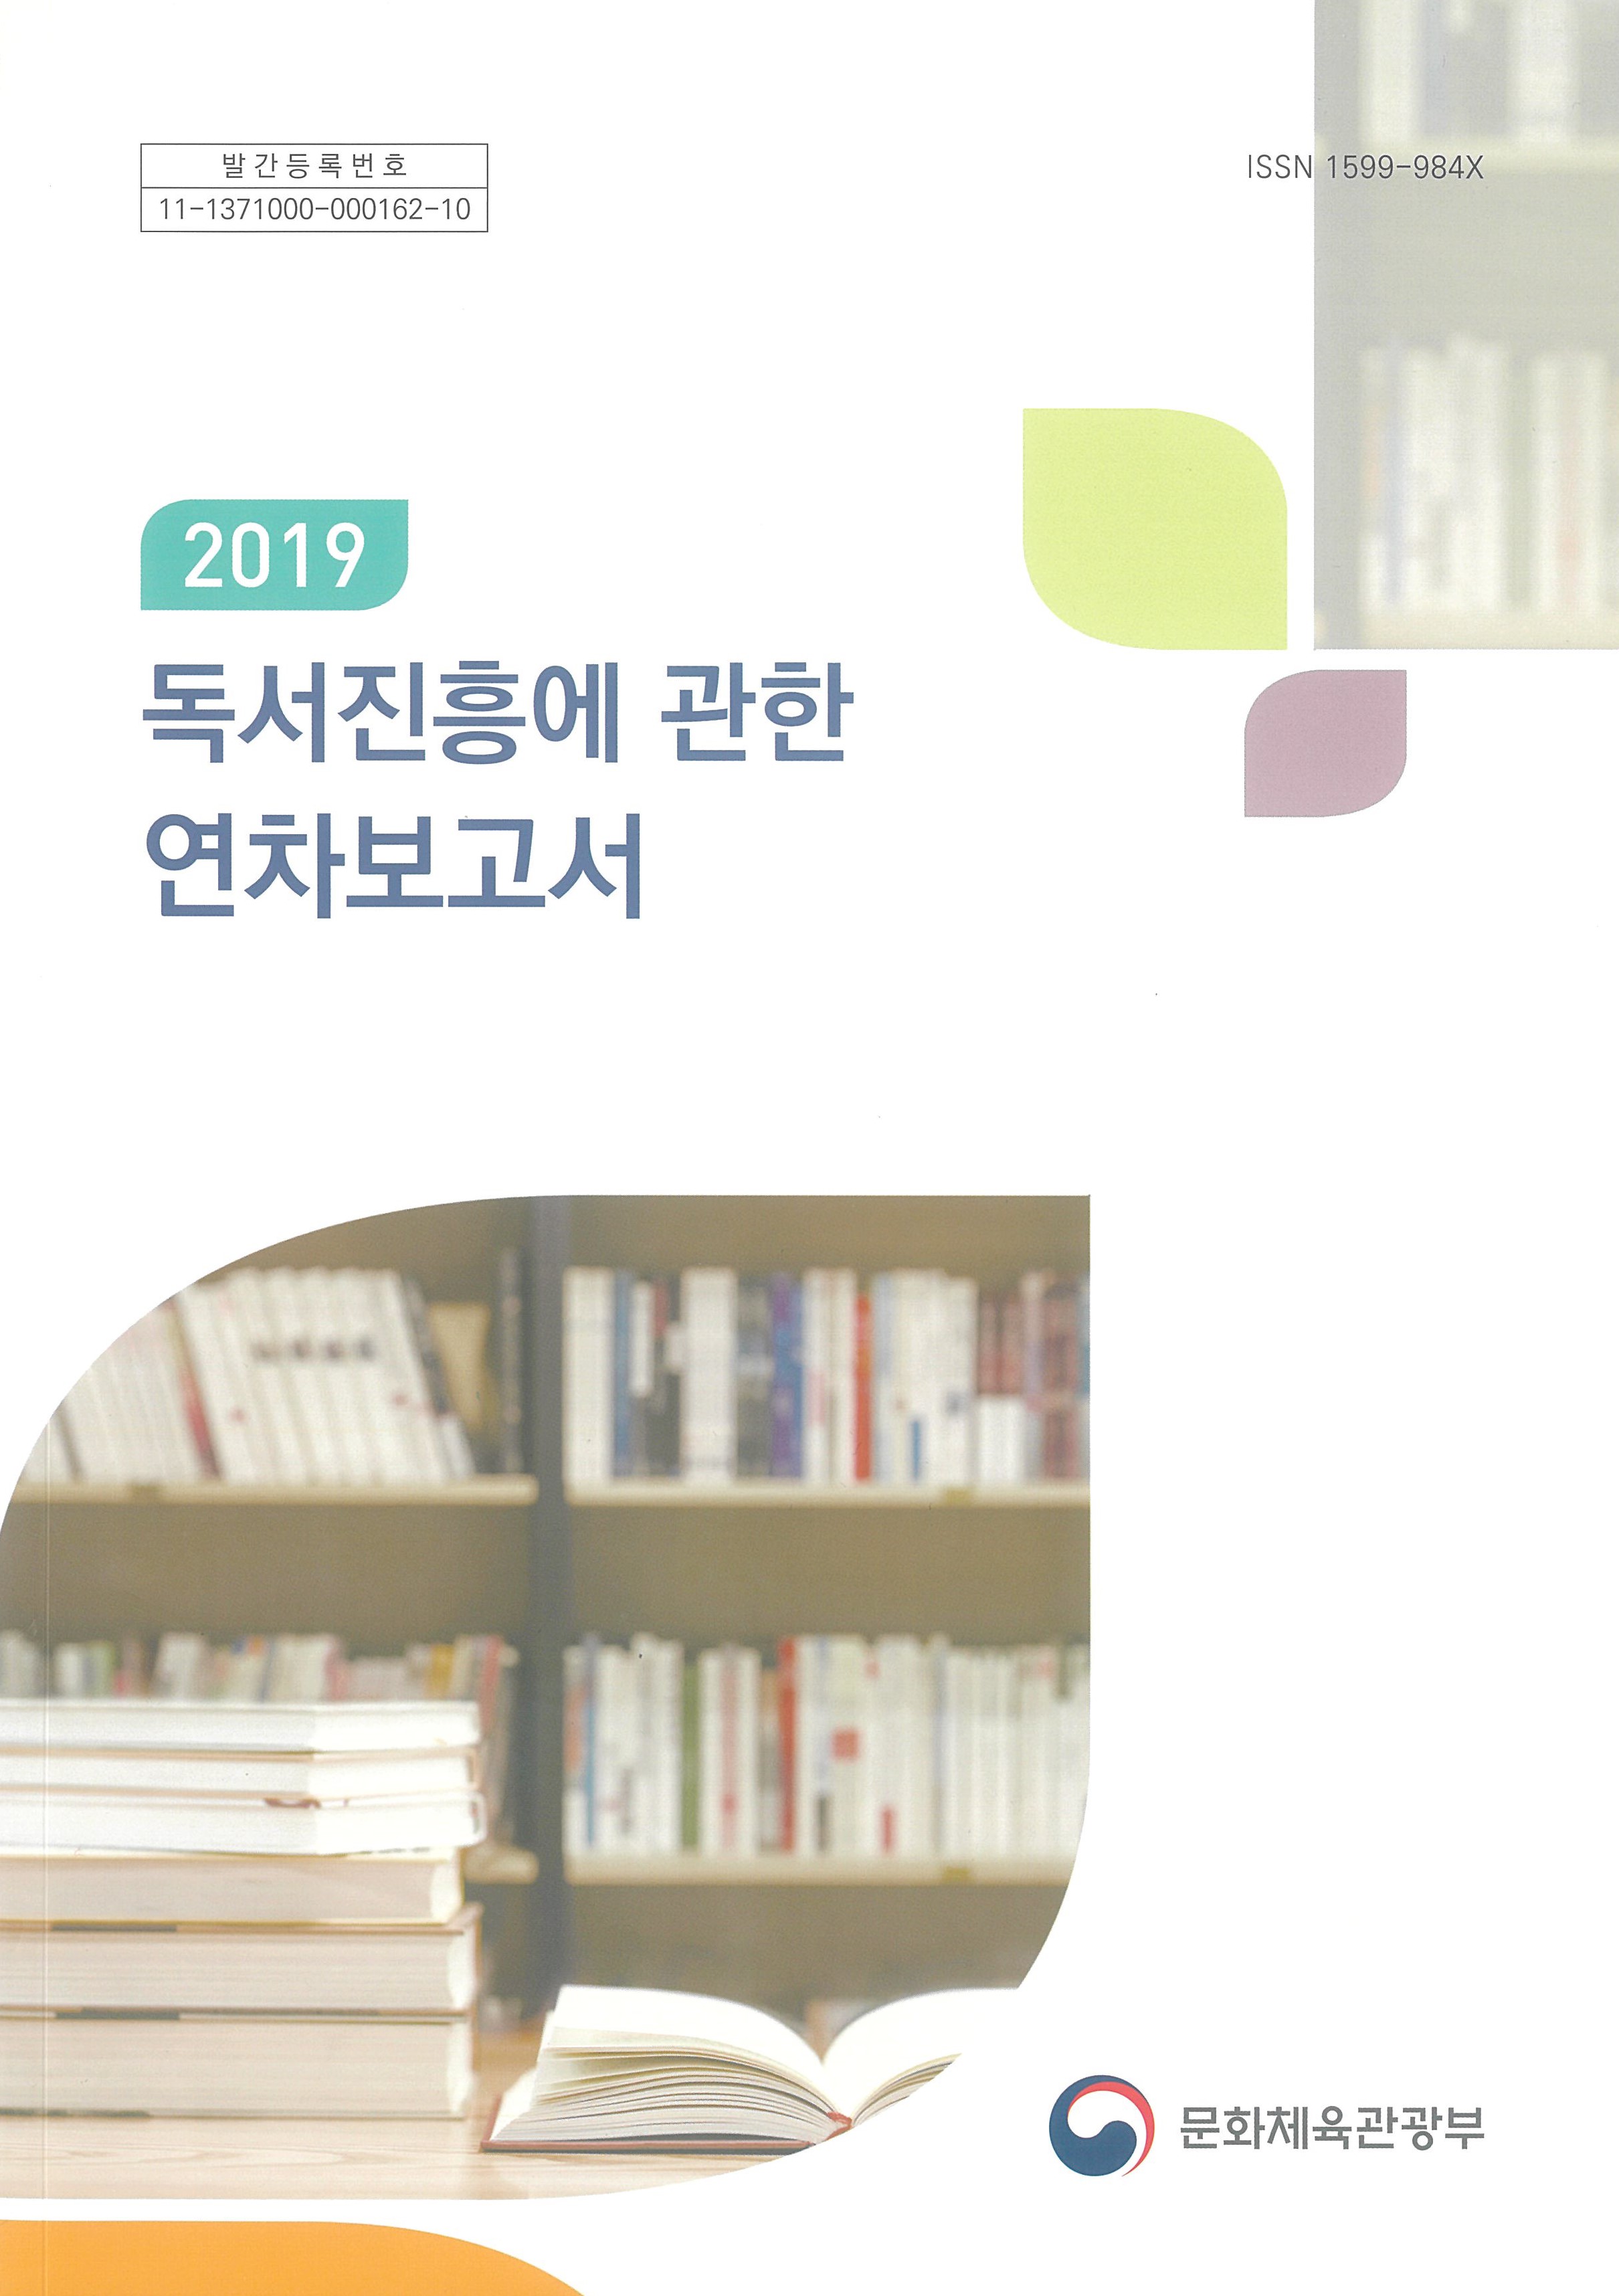 2019 독서진흥에 관한 연차보고서